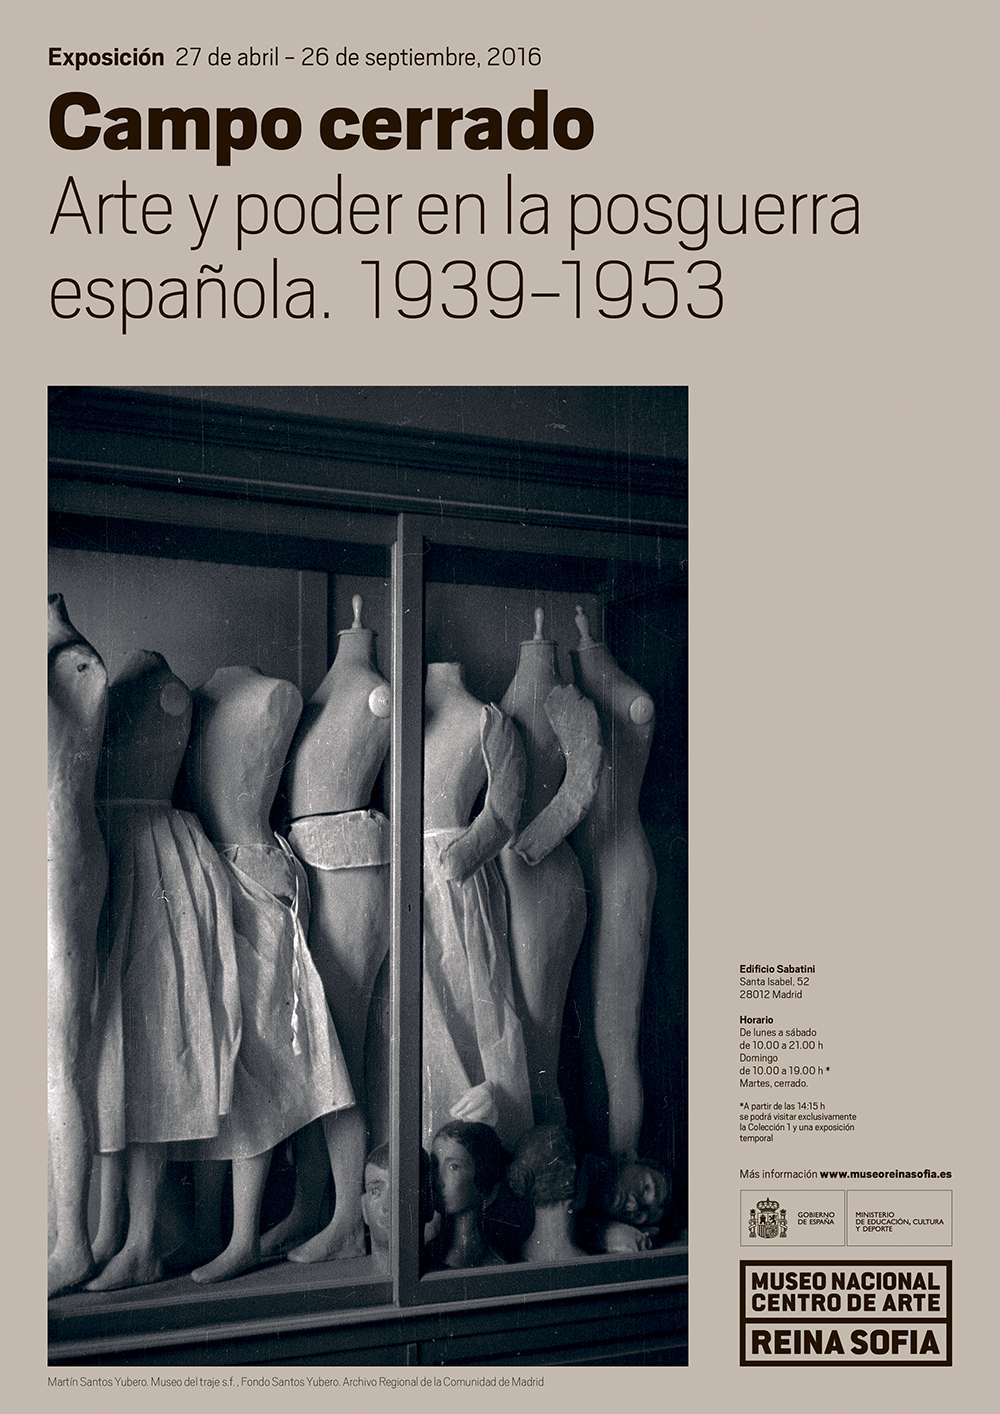 Campo cerrado. Arte y poder en la posguerra española 1939-1953. MNCARS. 